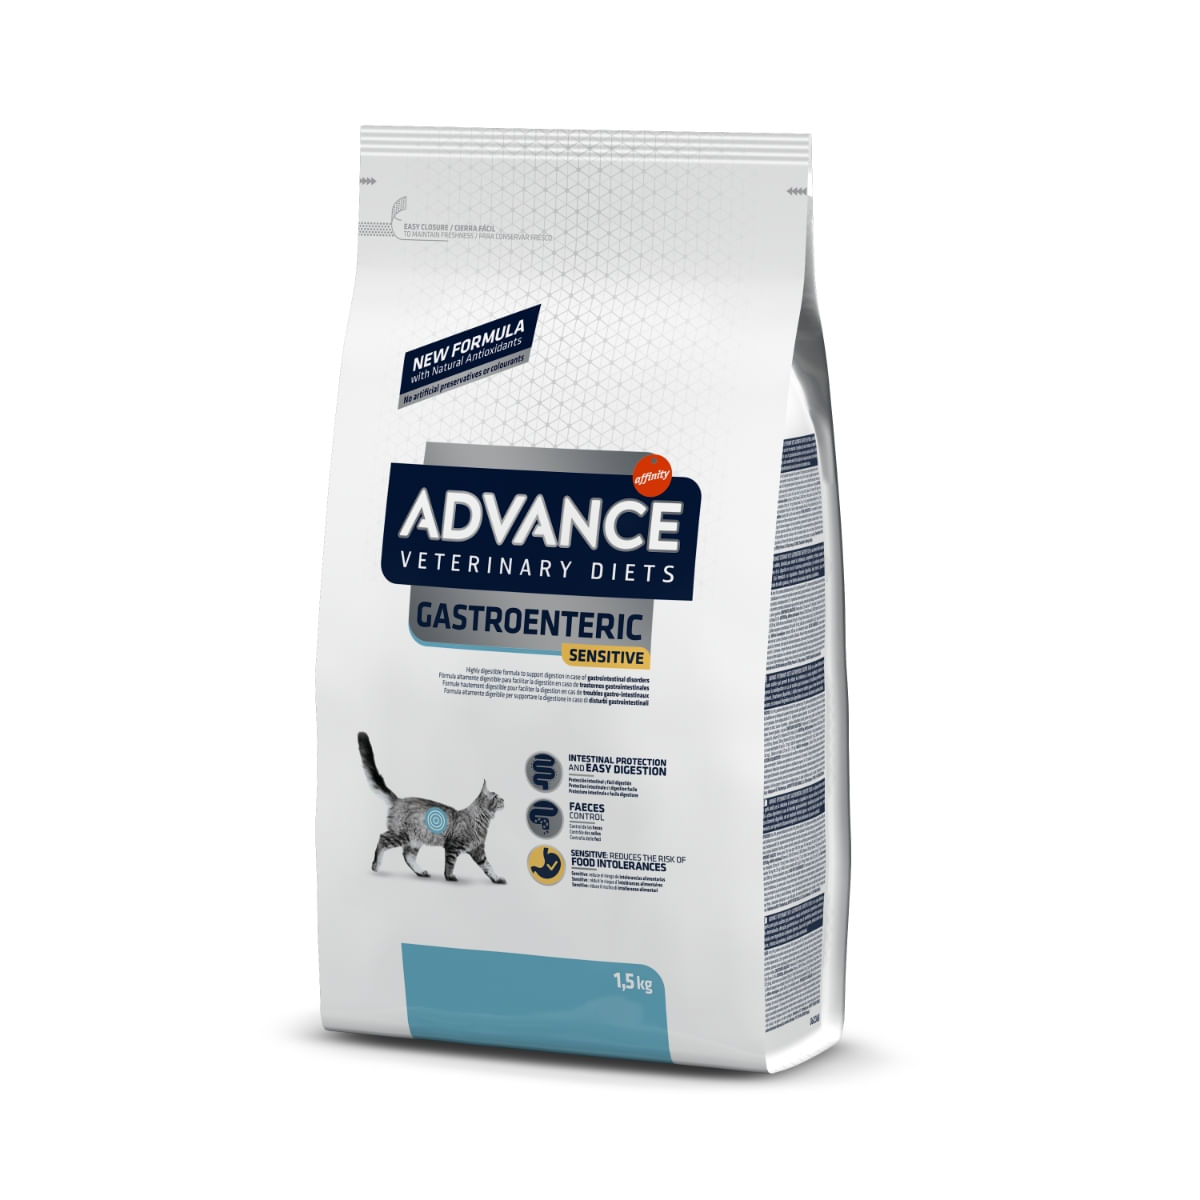 ADVANCE Veterinary Diets Cat Gastro Sensitive, dietă veterinară, hrană uscată pisici, afecțiuni digestive ADVANCE Veterinary Diets Gastroenteric Sensitive, dietă veterinară pisici, hrană uscată, sistem digestiv, 1.5kg